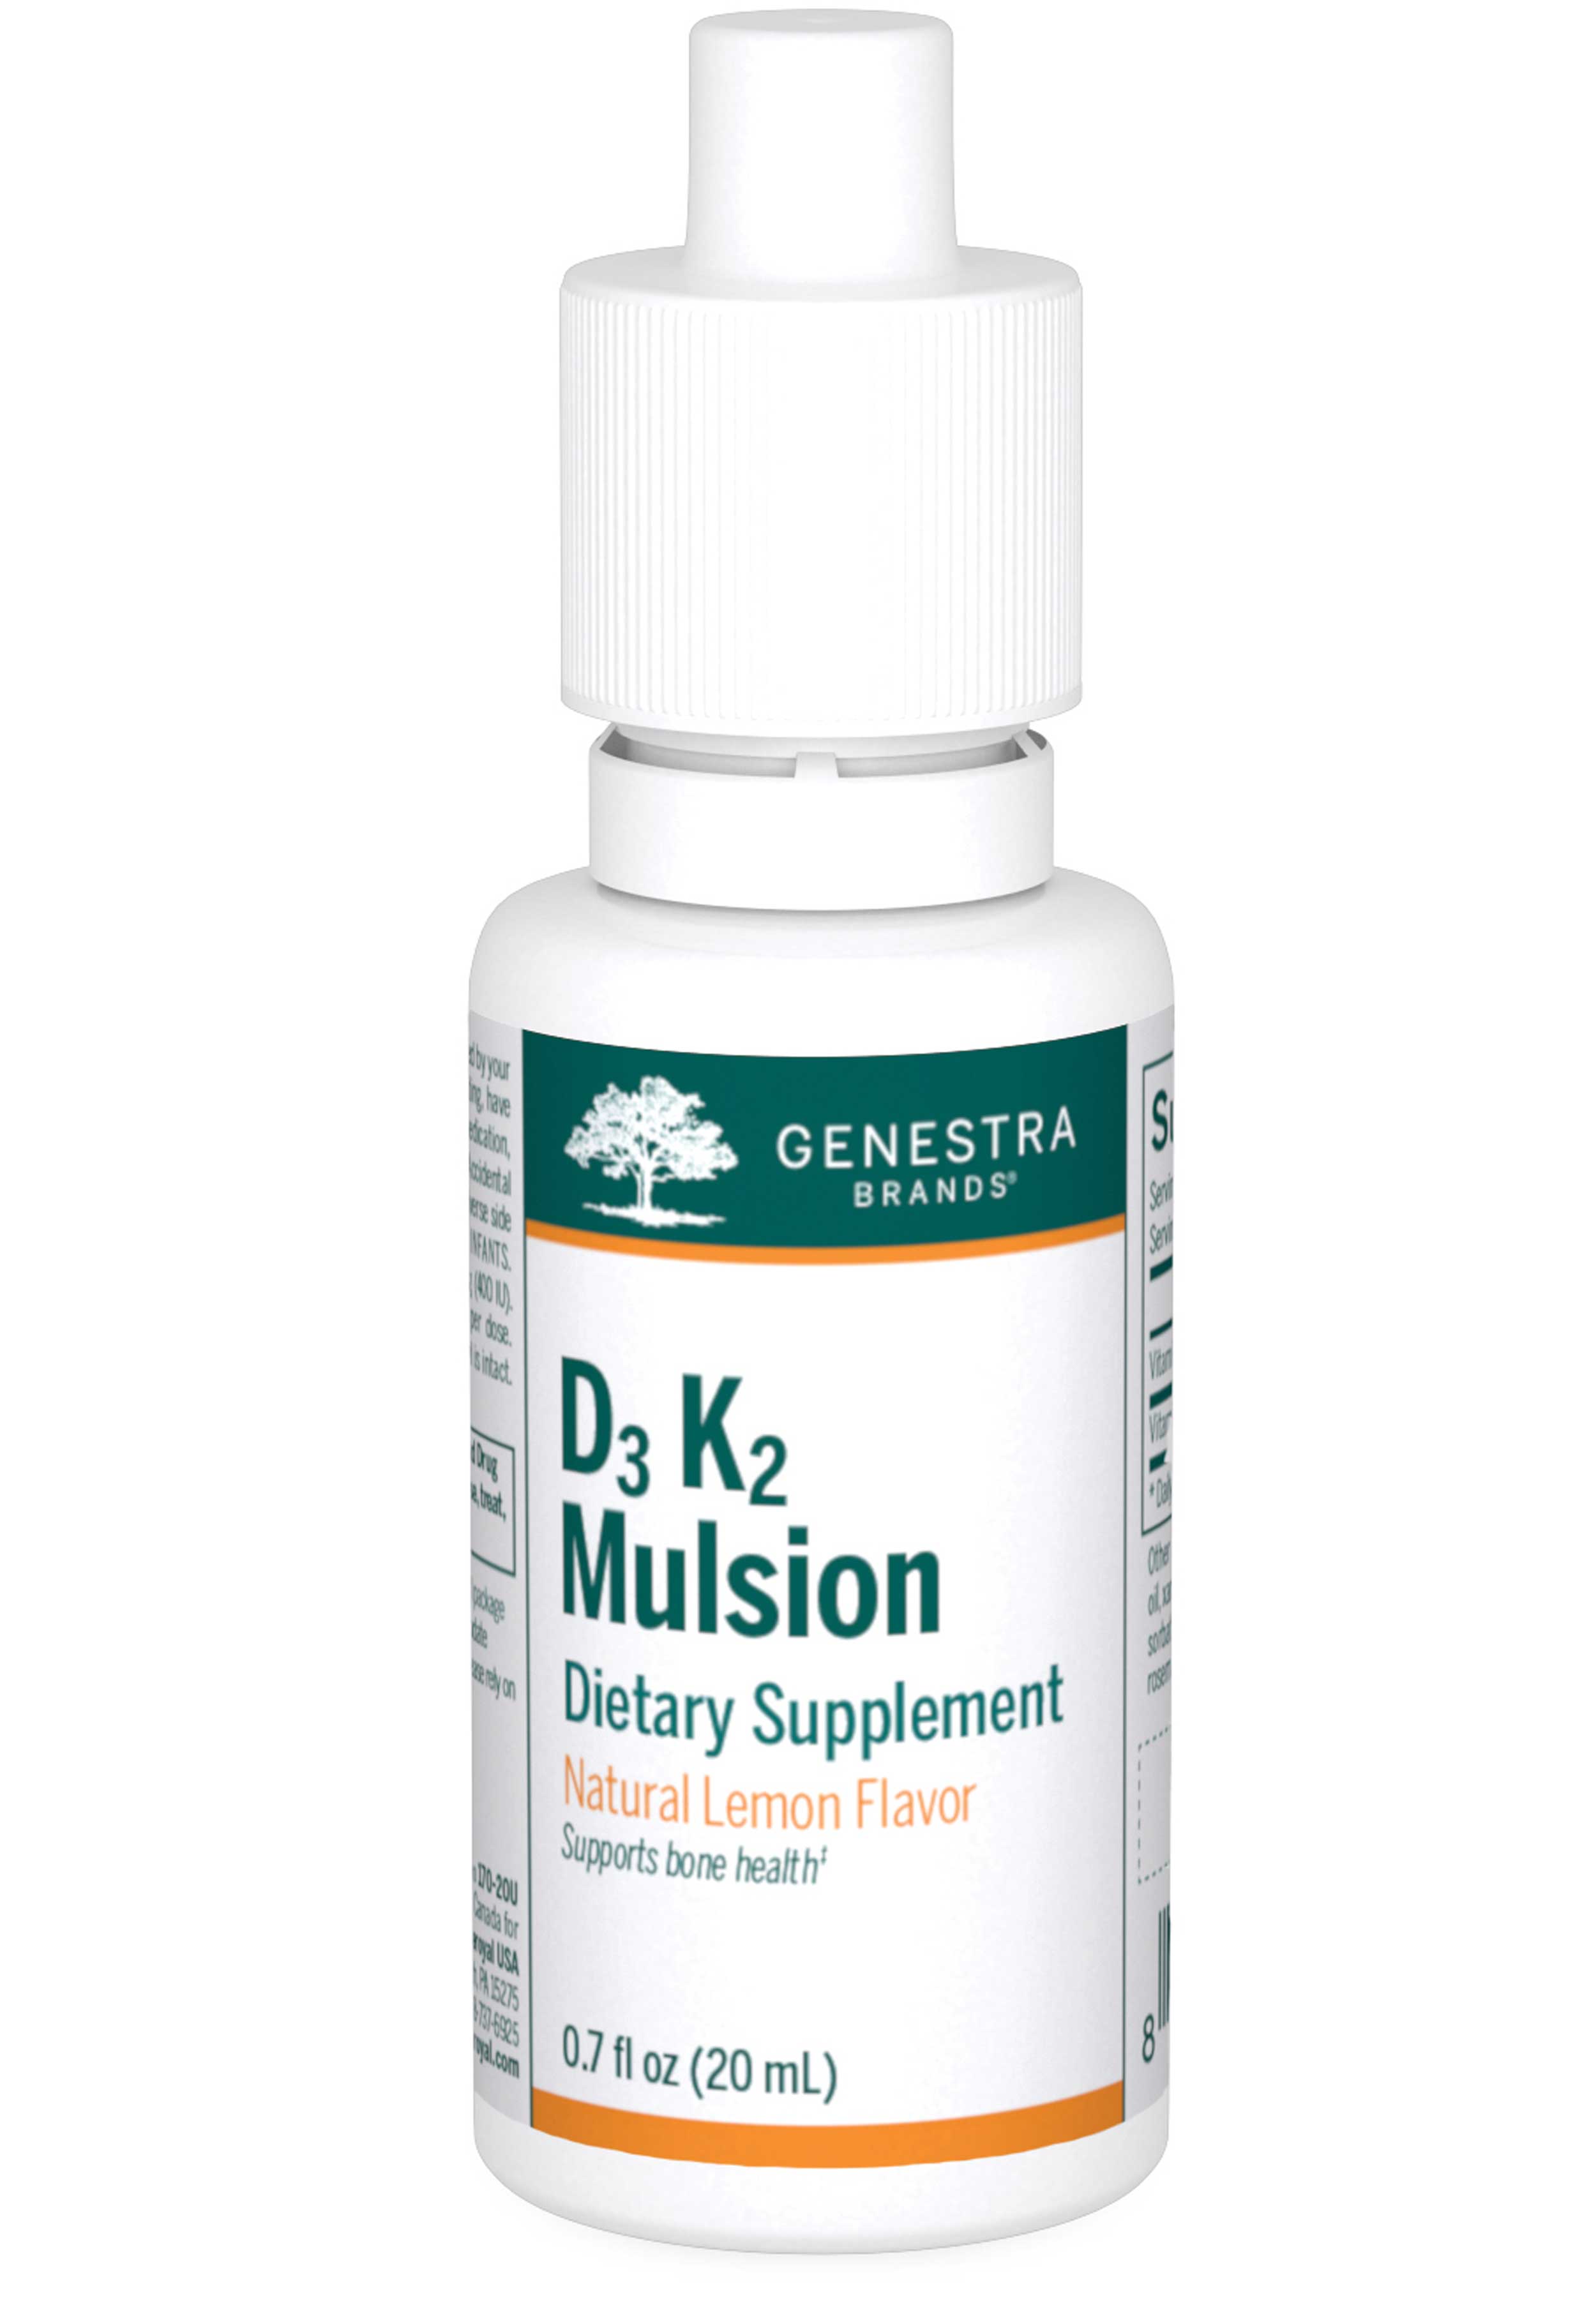 Genestra Brands D3 K2 Mulsion